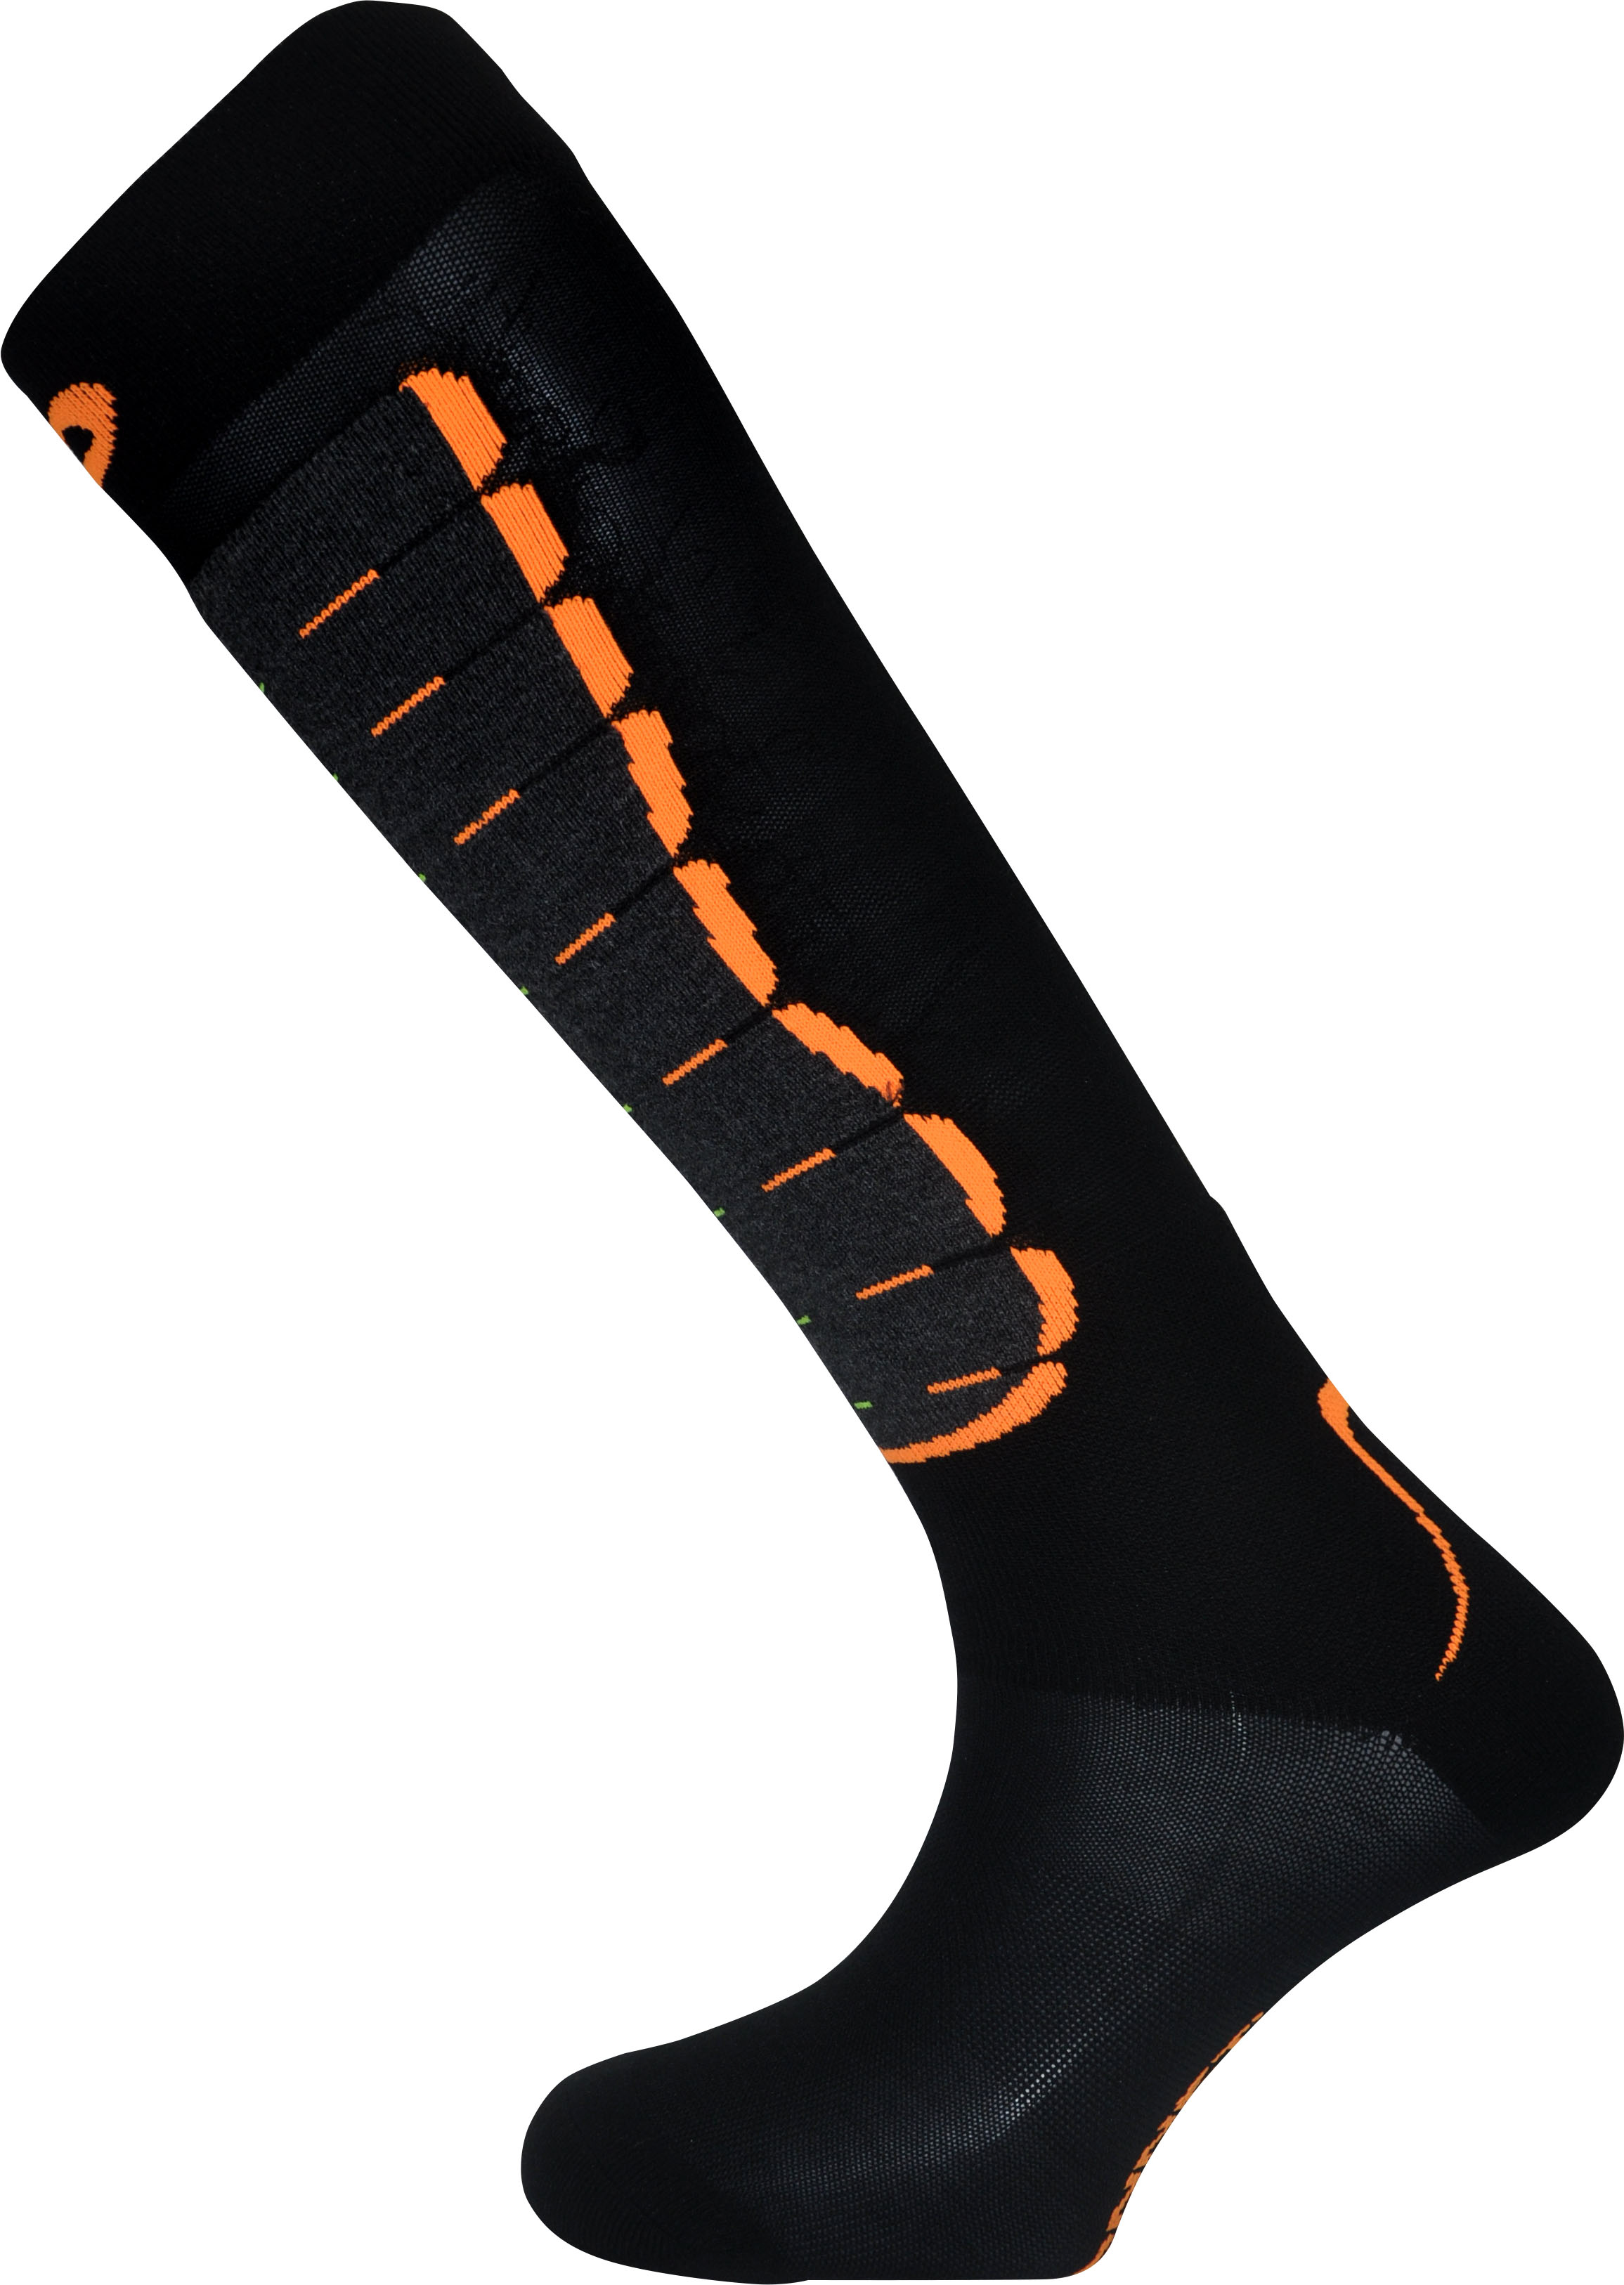 Monnet - Energy ski de rando - Ski socks